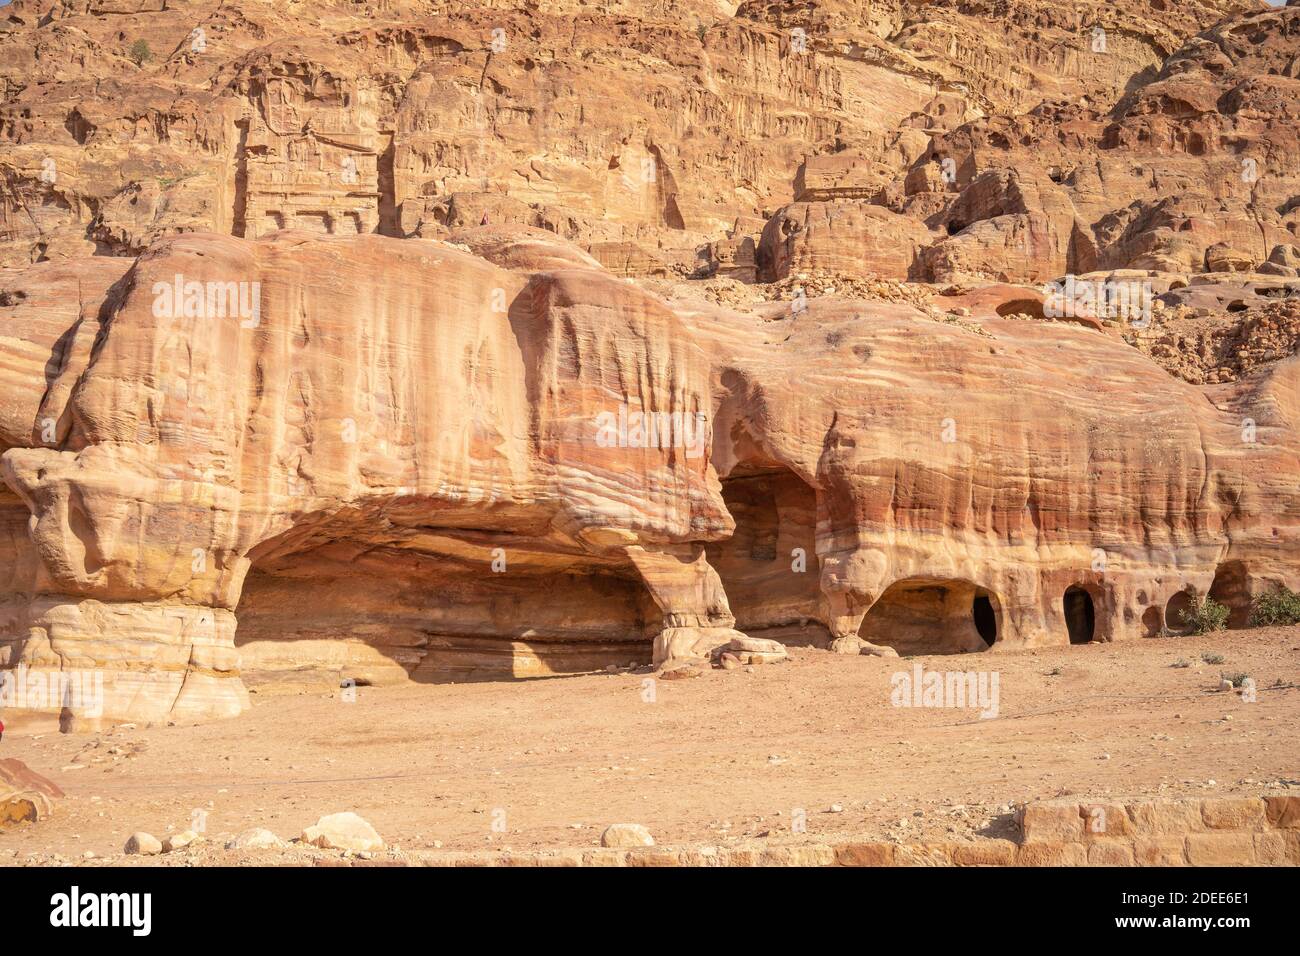 Vue sur les grottes de Burial dans l'ancienne ville de Petra en Jordanie. Les grottes sont sculptées en grès directement dans la roche. Thème du voyage en Jordanie. Banque D'Images